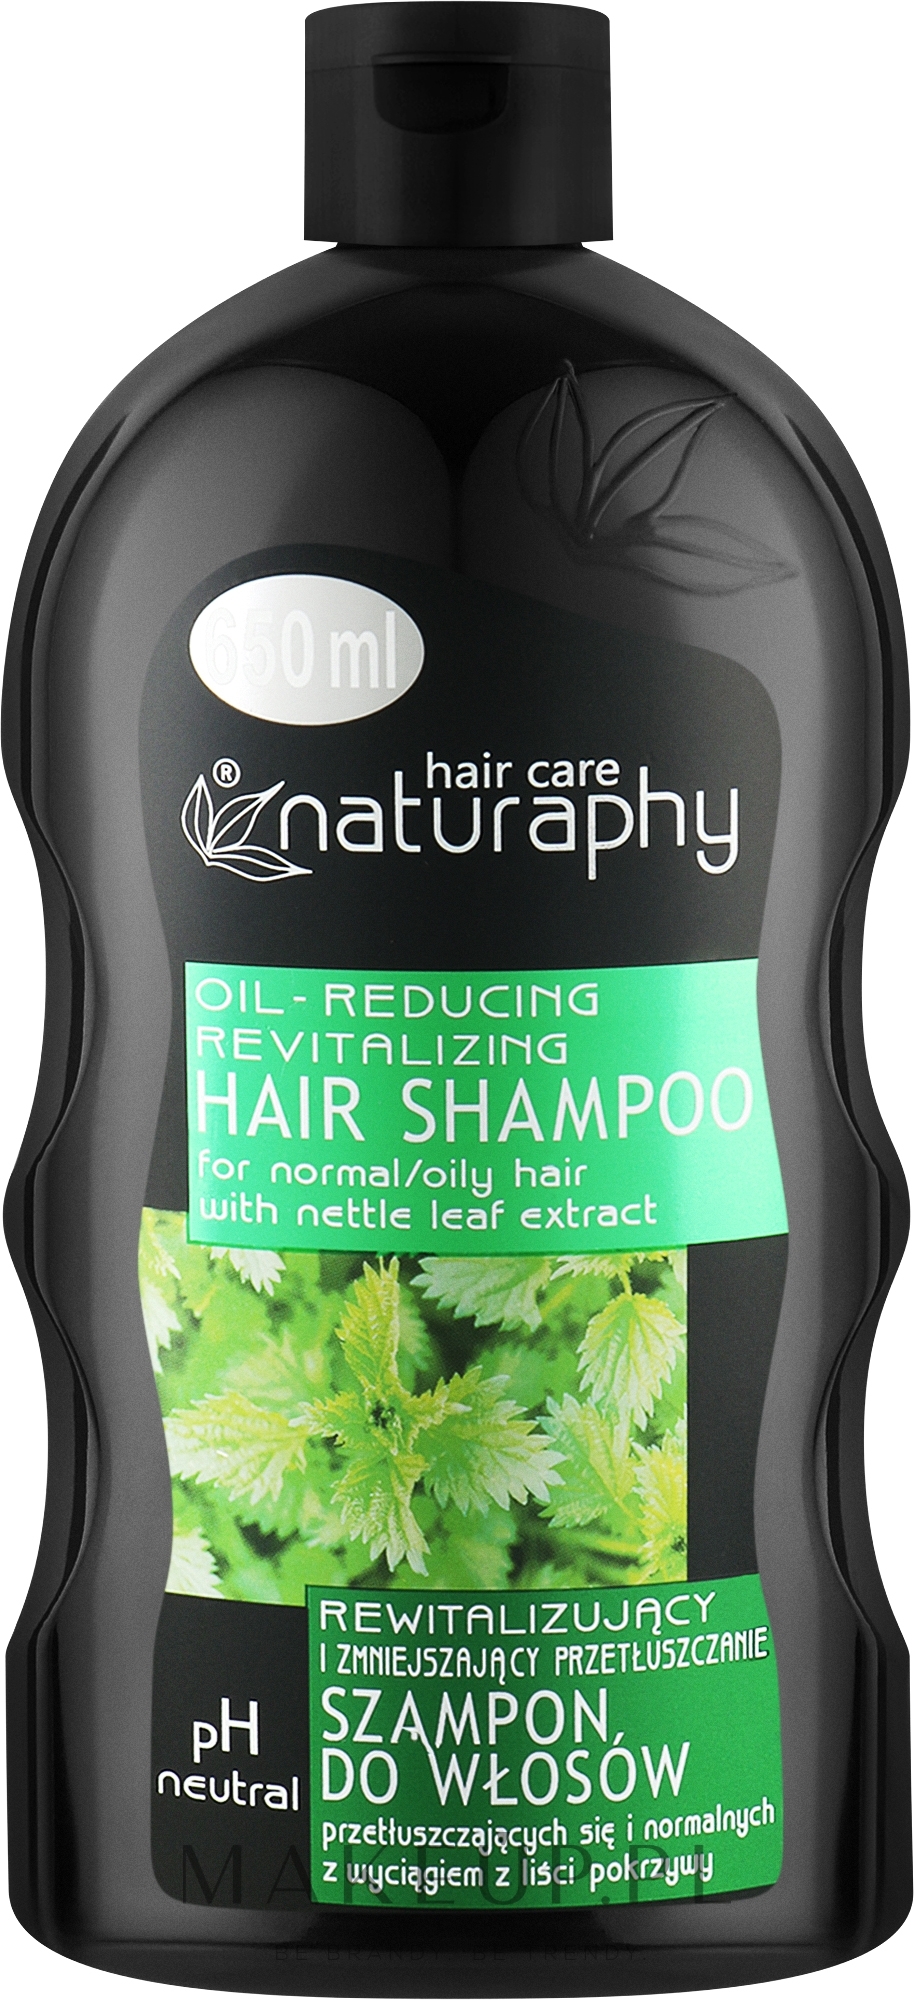 Rewitalizujący szampon do włosów - Naturaphy Nettle Leaf Extract Shampoo — Zdjęcie 650 ml